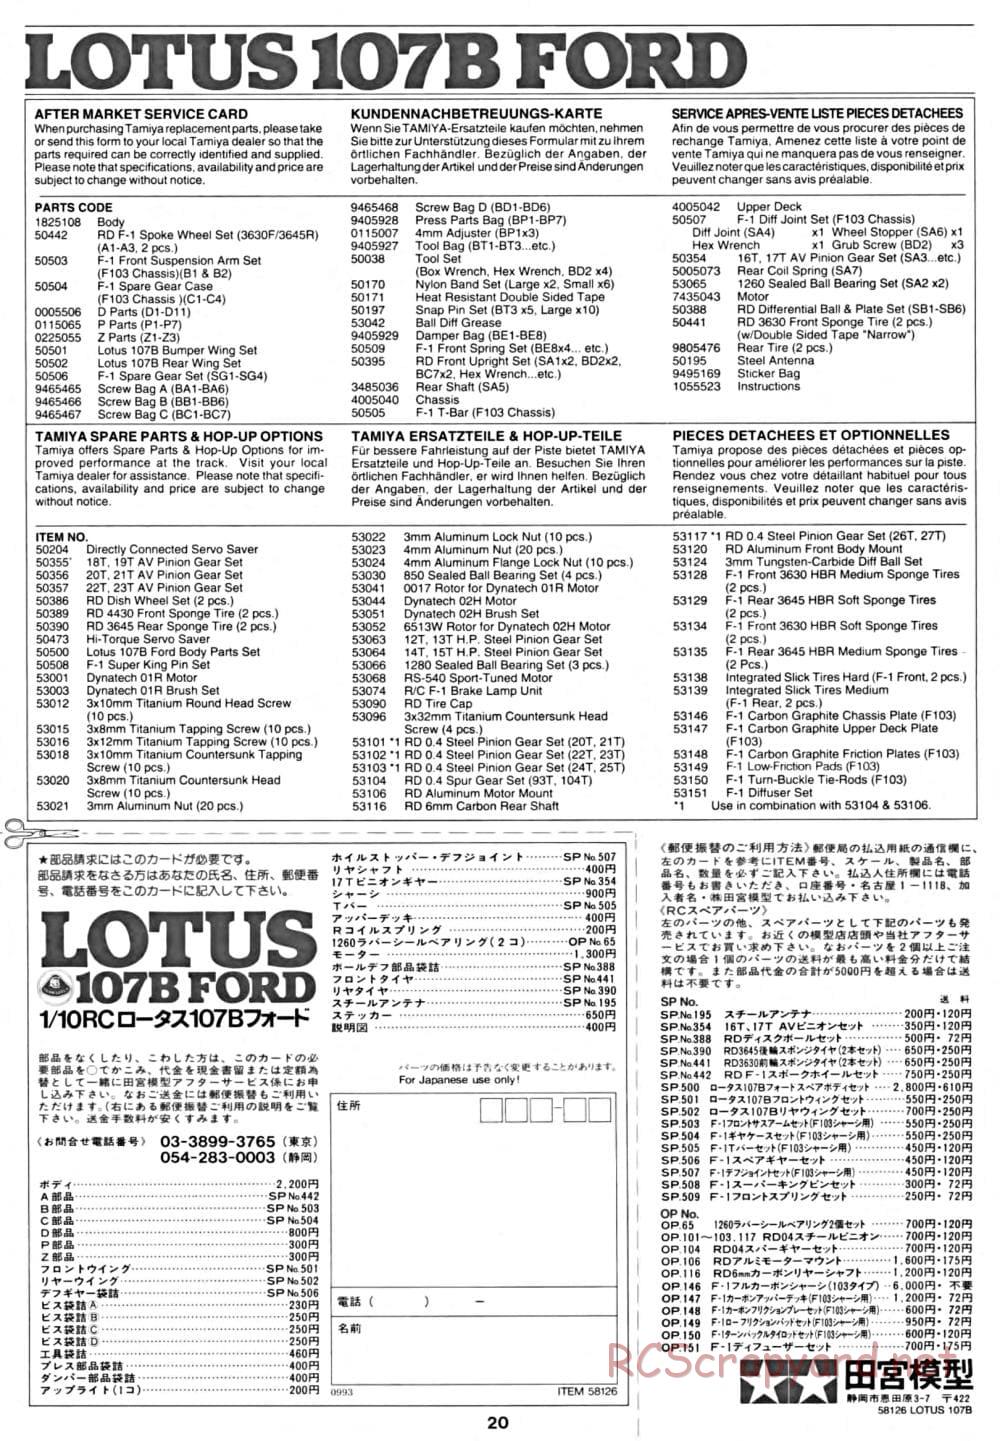 Tamiya - Lotus 107B Ford - F103 Chassis - Manual - Page 20